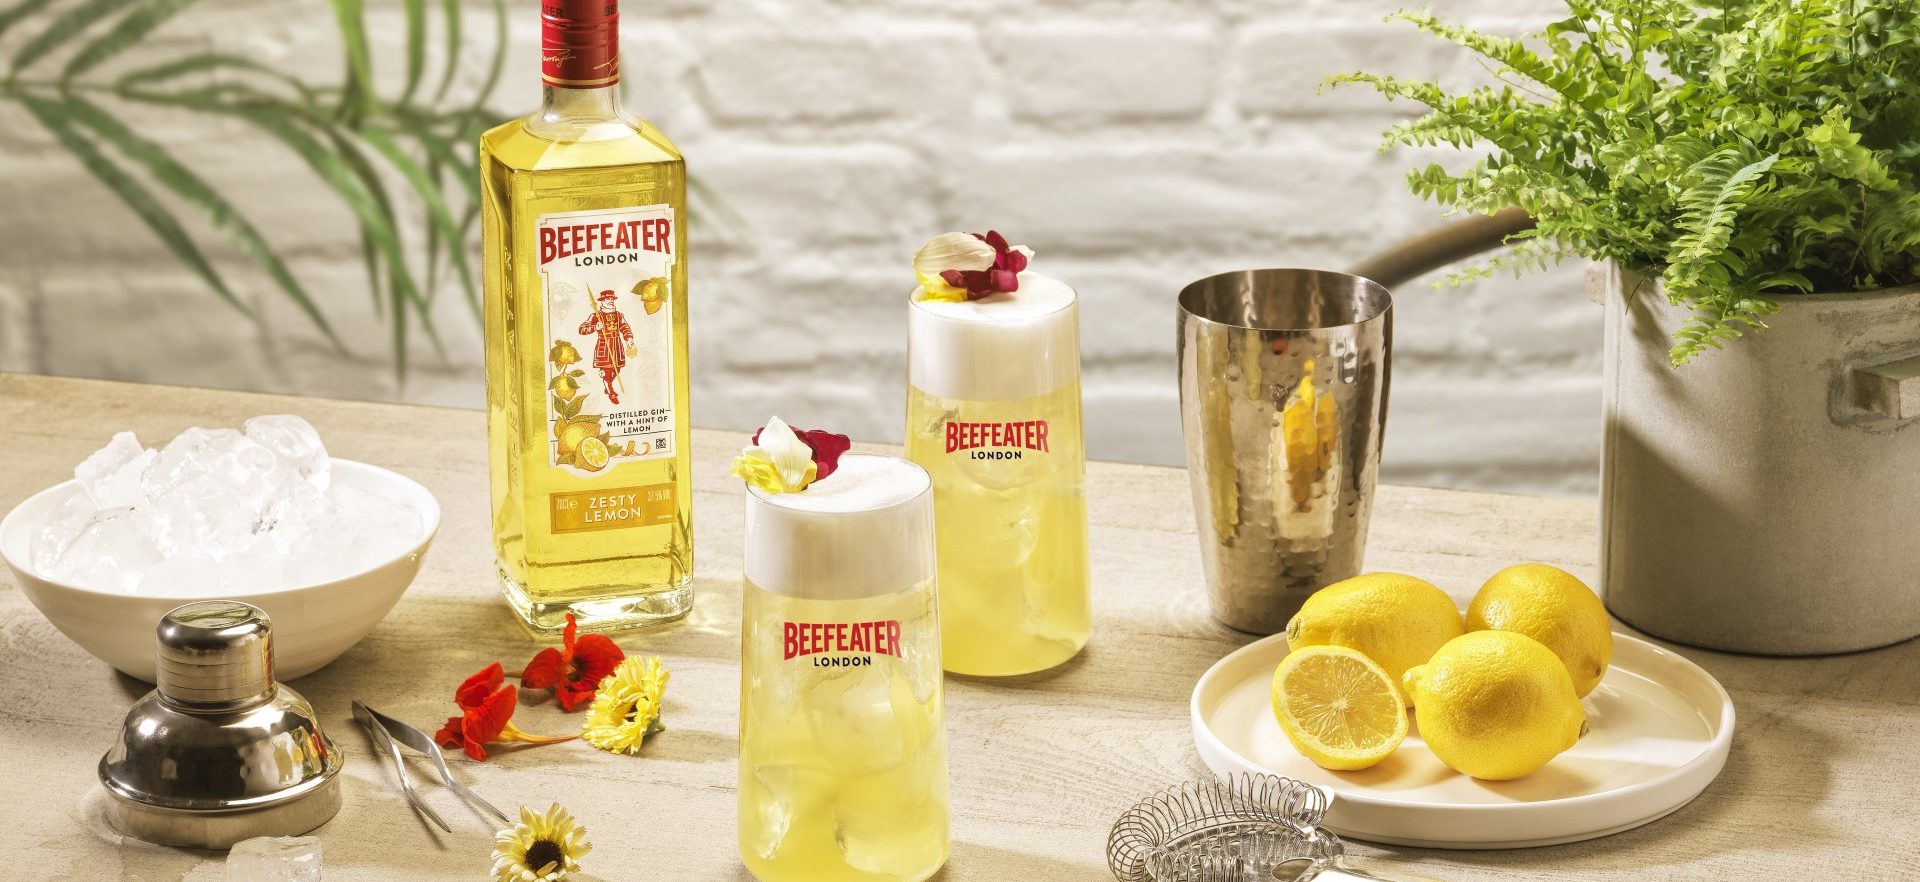 beefeater zesty lemon fizz cocktail aspect ratio 1647 756